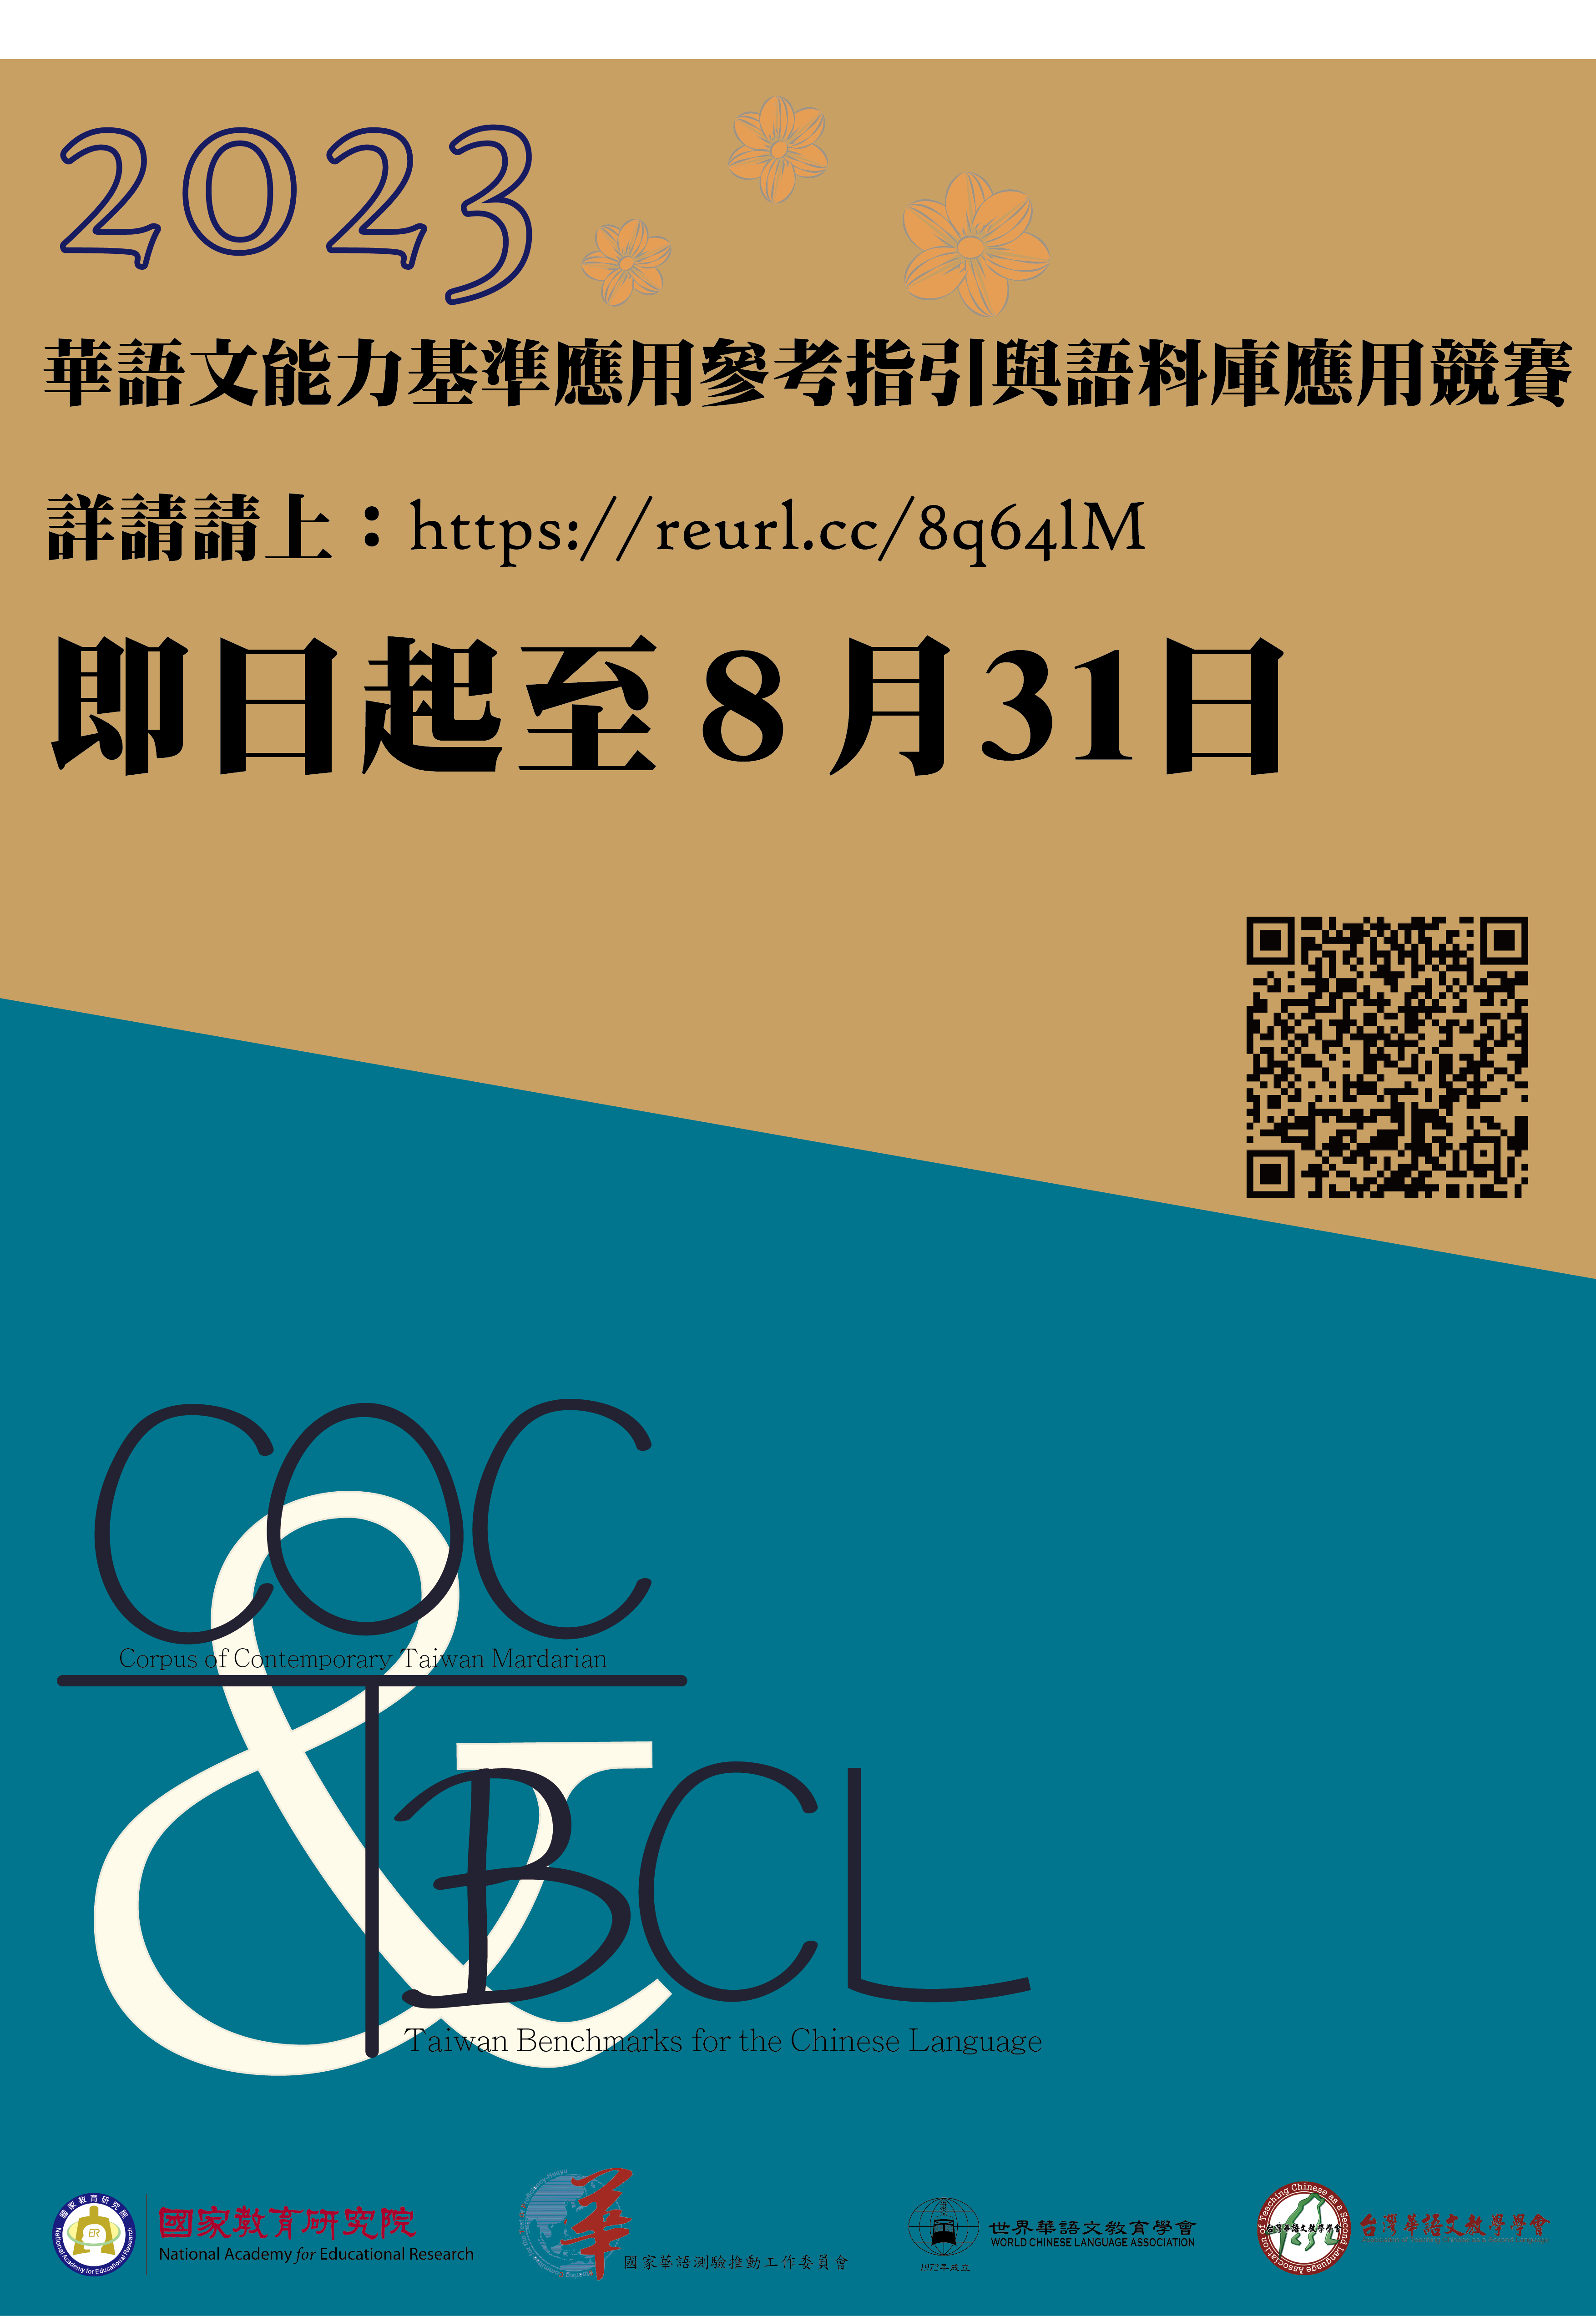 國家教育研究院「2023華語文能力基準應用參考指引與語料庫應用競賽」~歡迎報名參加!